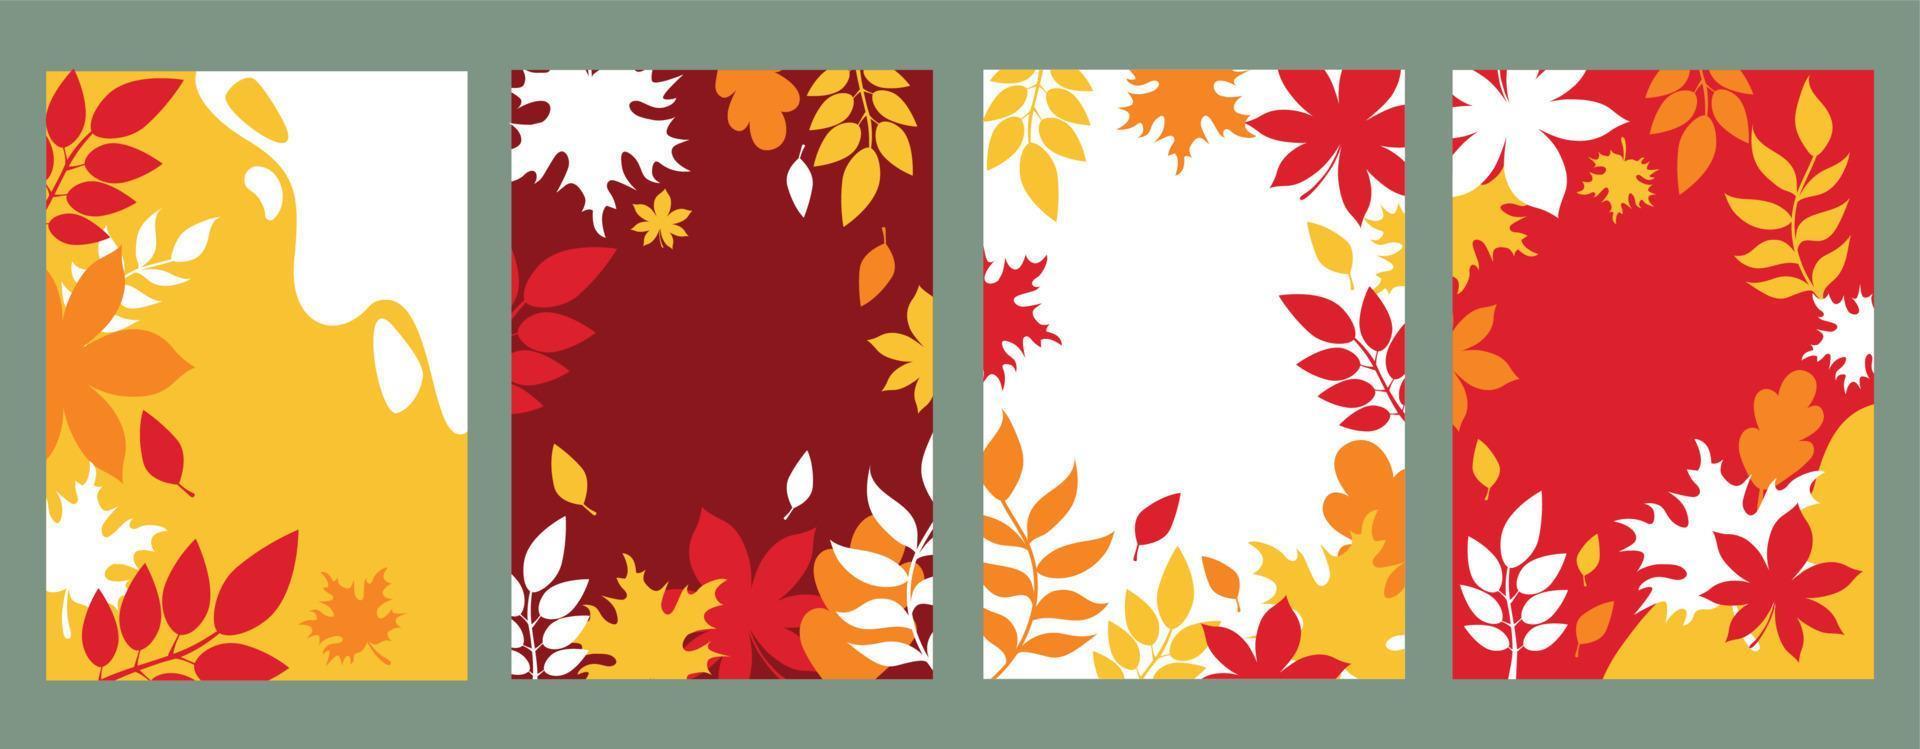 modelos abstratos de arte genérica na moda do outono. adequado para capa, banner da web, cartaz, folheto, cartaz, cartão postal - vetor